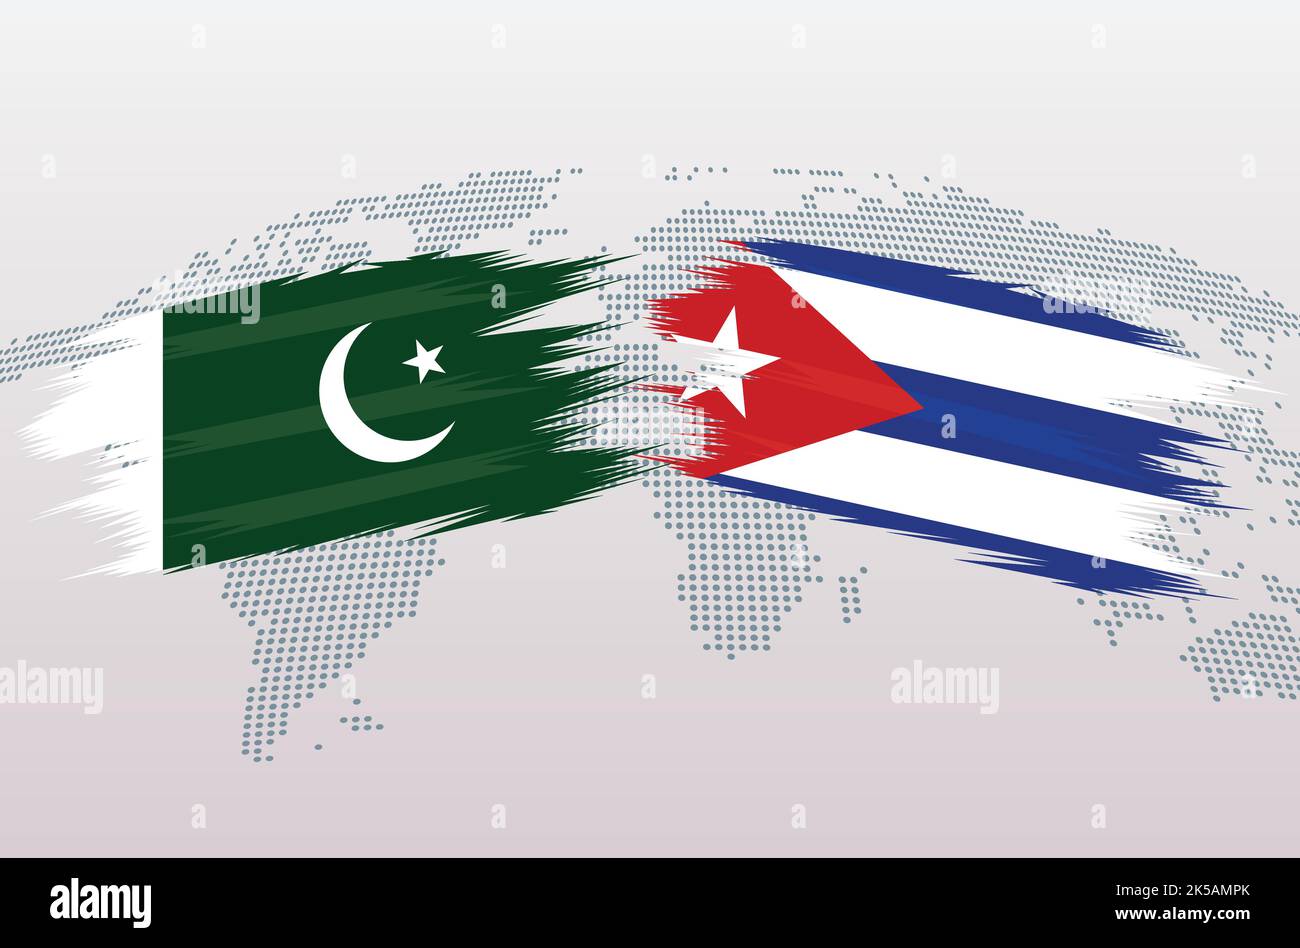 Drapeaux pakistanais contre Cuba. Drapeau de la République islamique du Pakistan contre Cuba, isolé sur fond gris de la carte du monde. Illustration vectorielle. Illustration de Vecteur